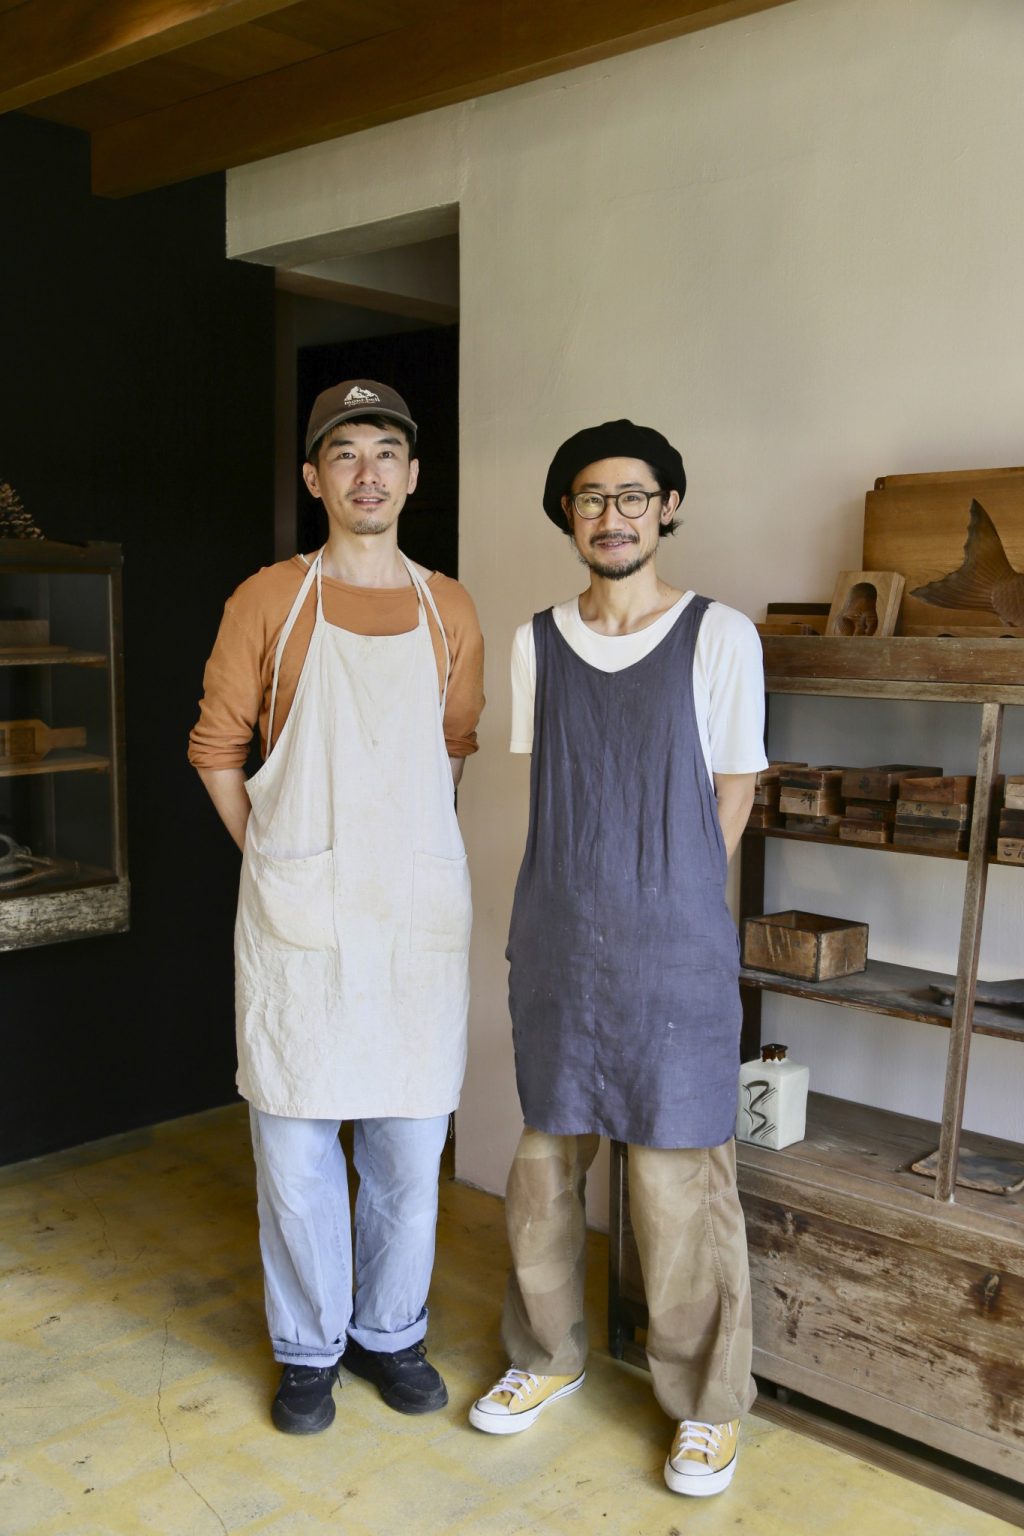 屋部龍馬（右：やぶ・りょうま）武山忠司（左：たけやま・ただし）／パン職人の屋部さんとデザイナーで実家が和菓子店を営んでいた武山さんがコラボレーション。「琉球菓子の幅も広げていきたいです」